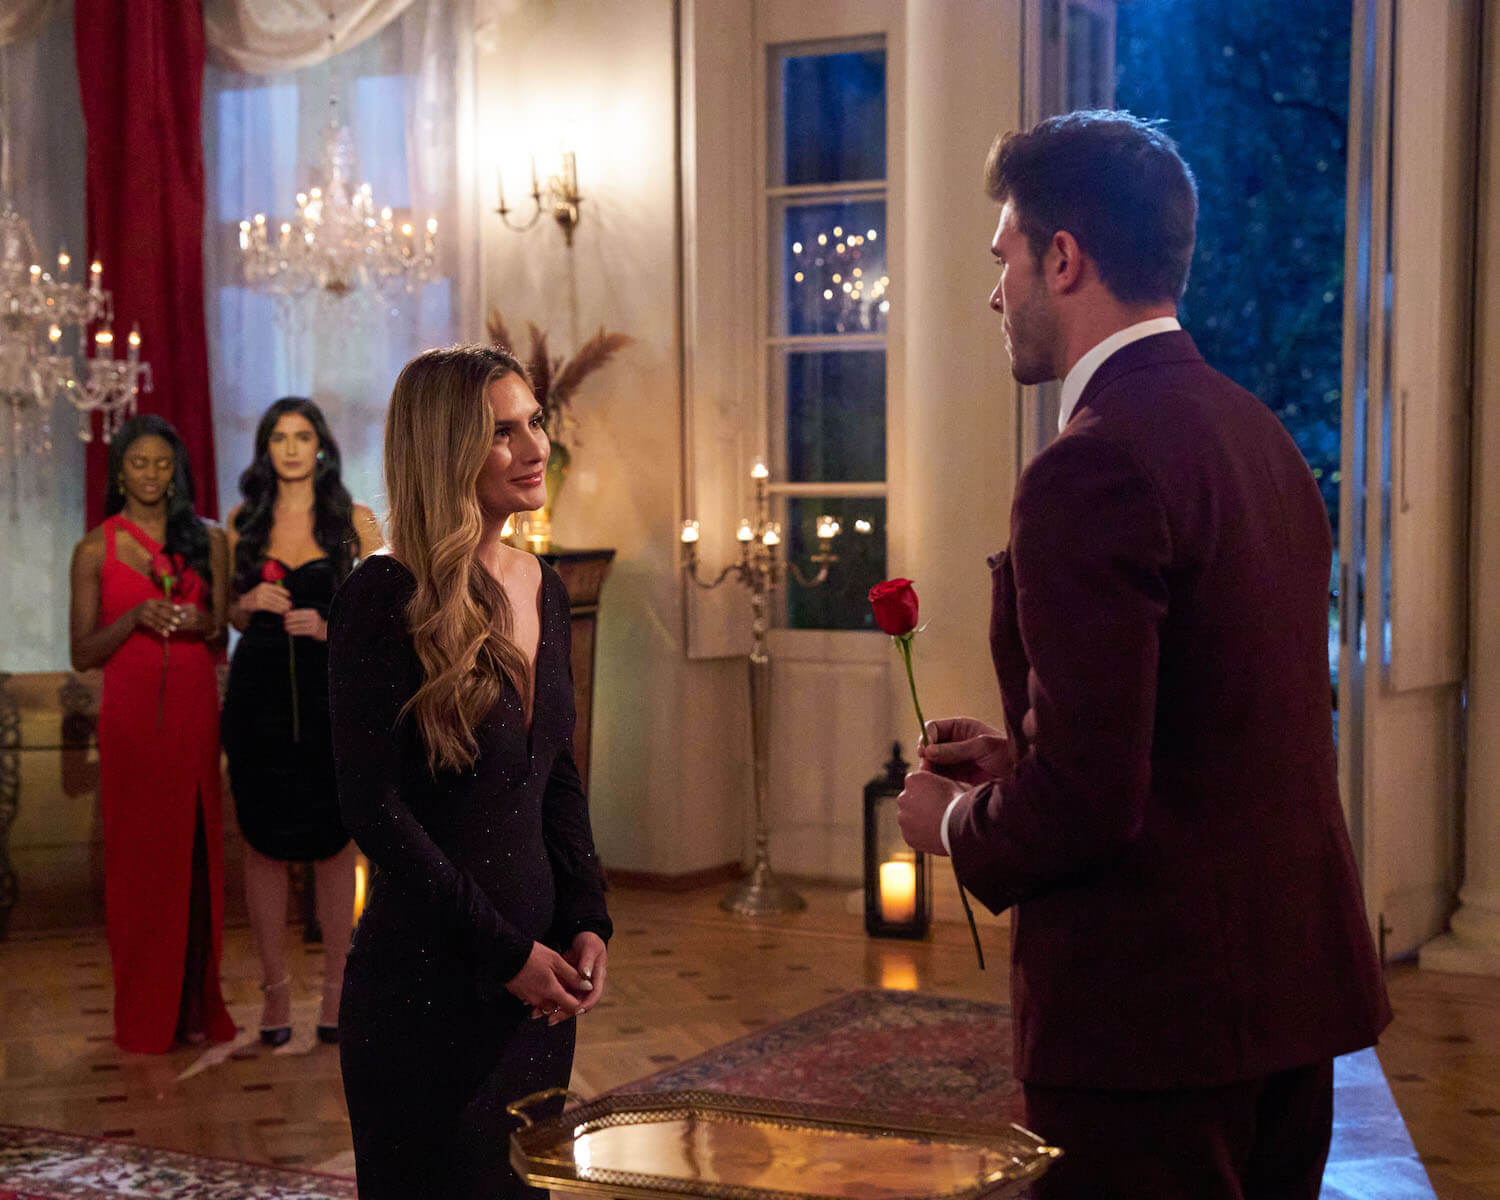 Zach Shallcross handing Kat Izzo a rose in 'The Bachelor' Season 27